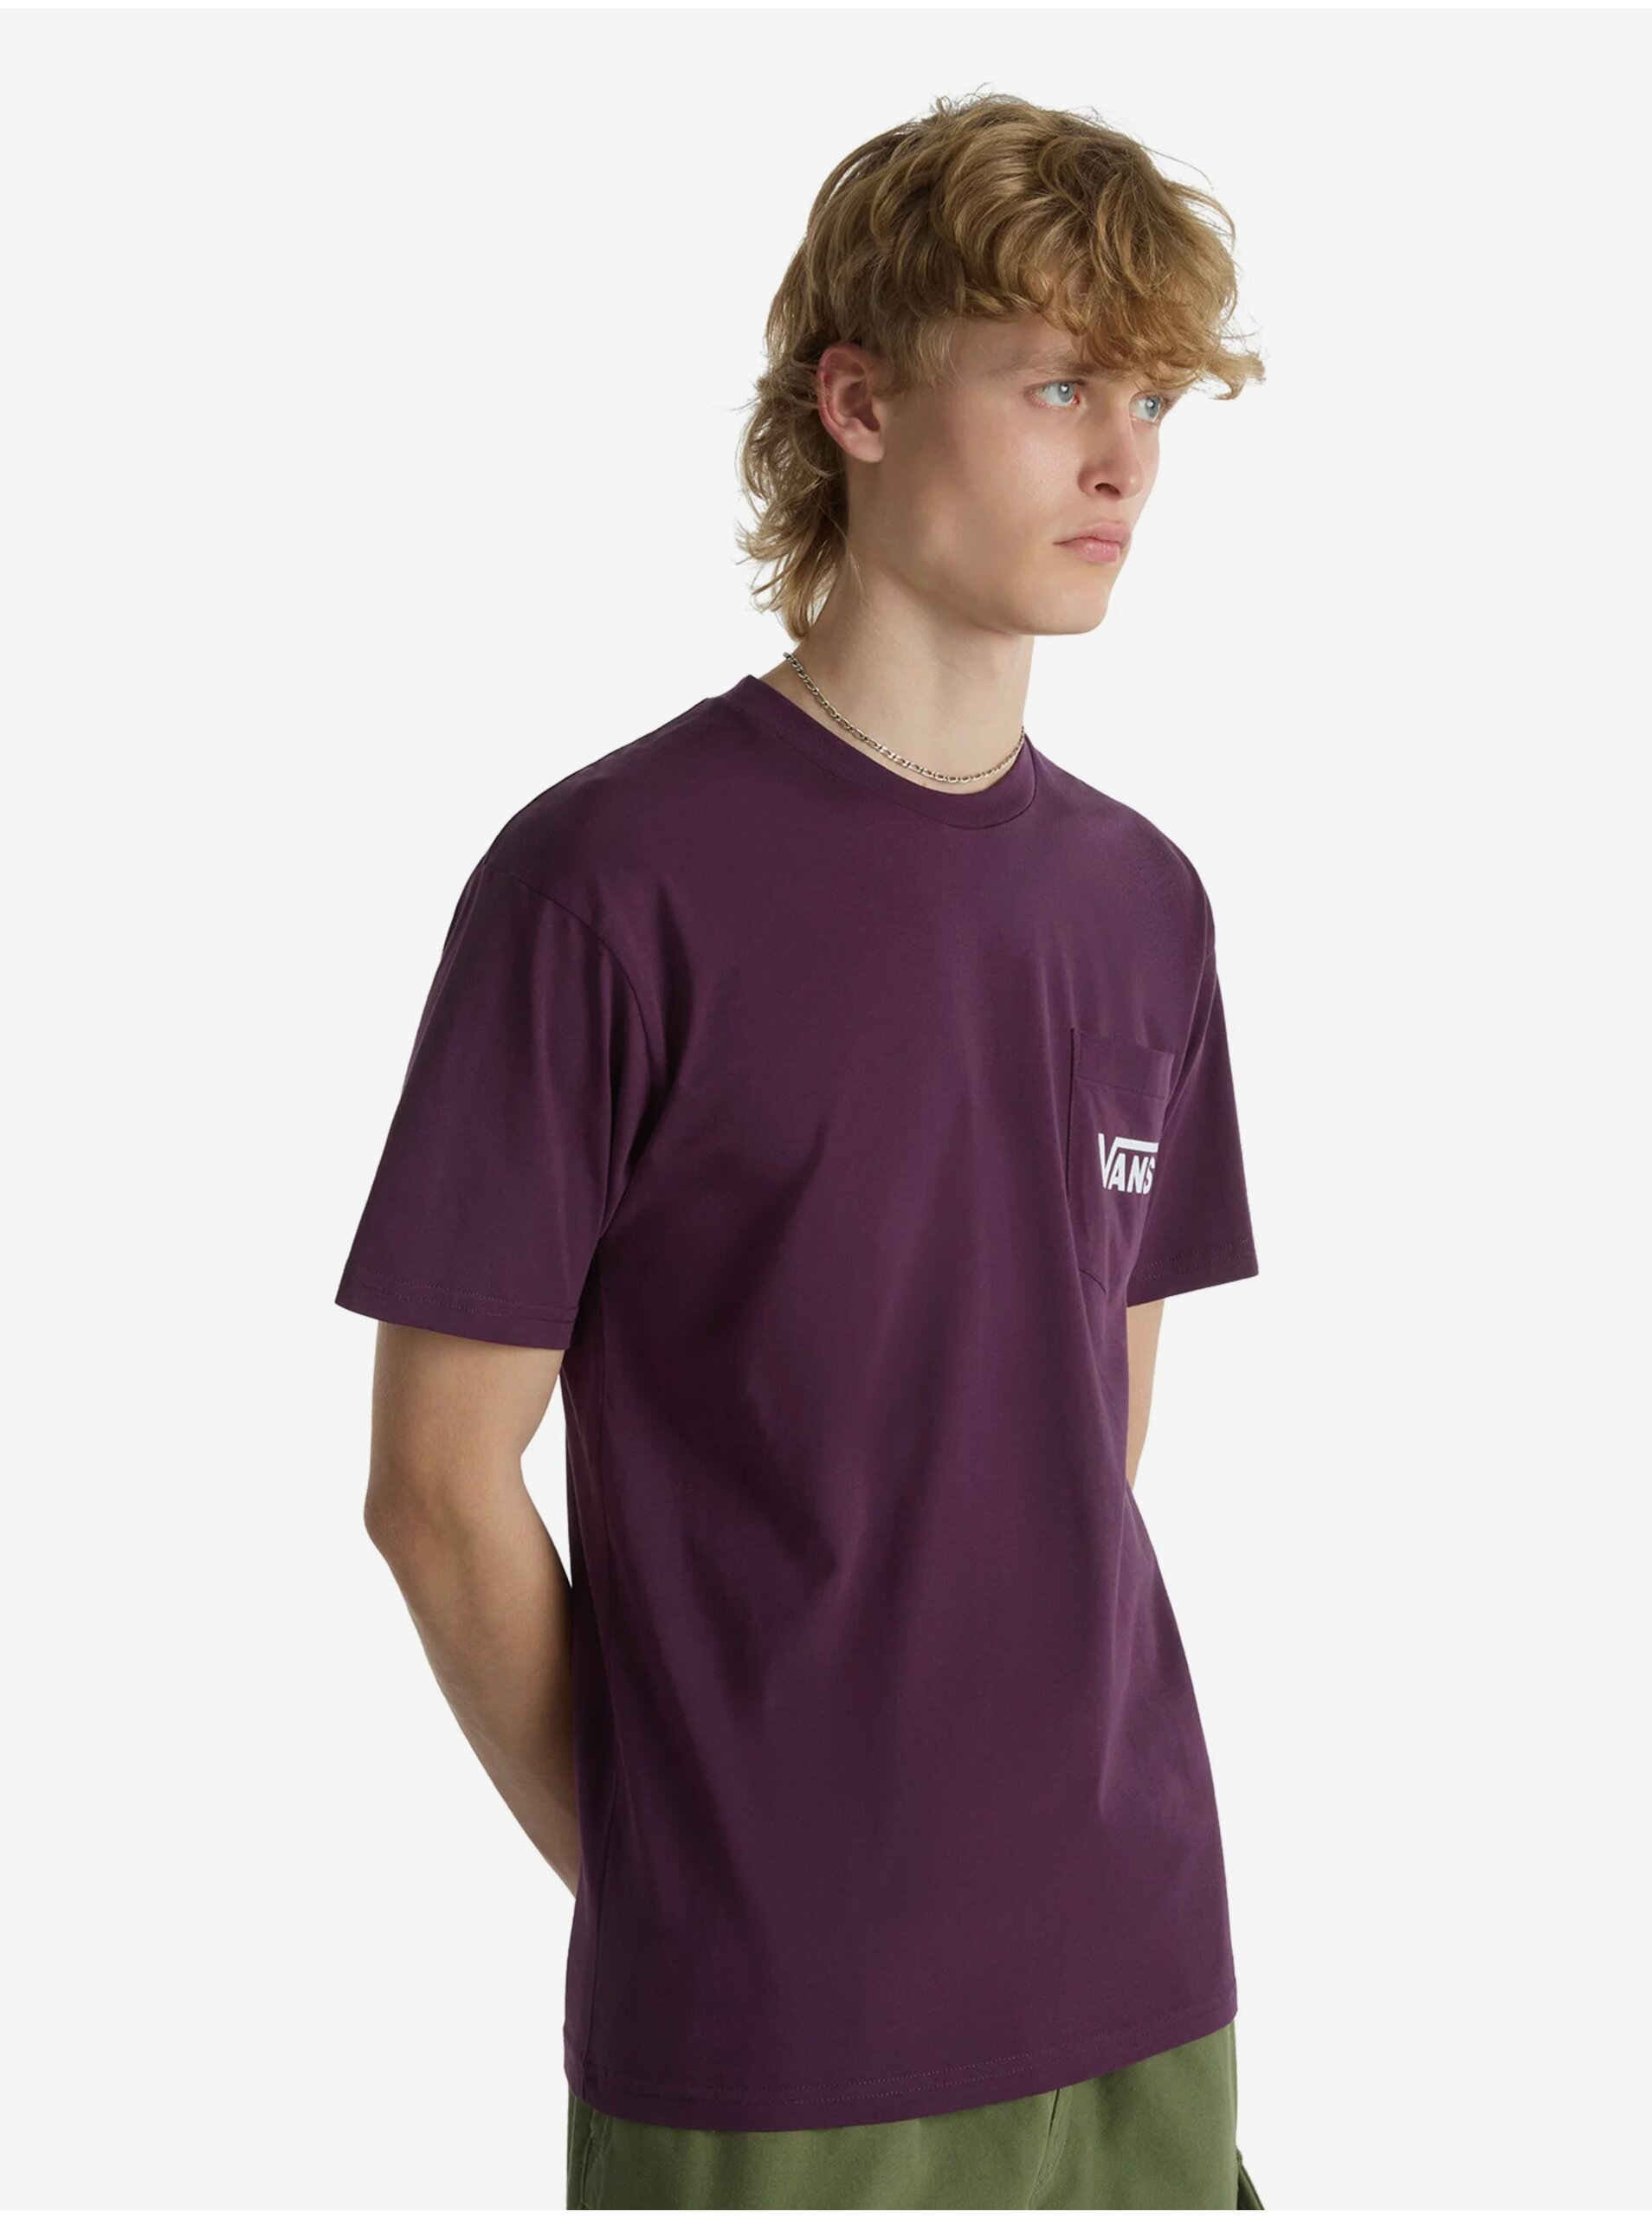 Lacno Fialové pánske tričko VANS Style 76